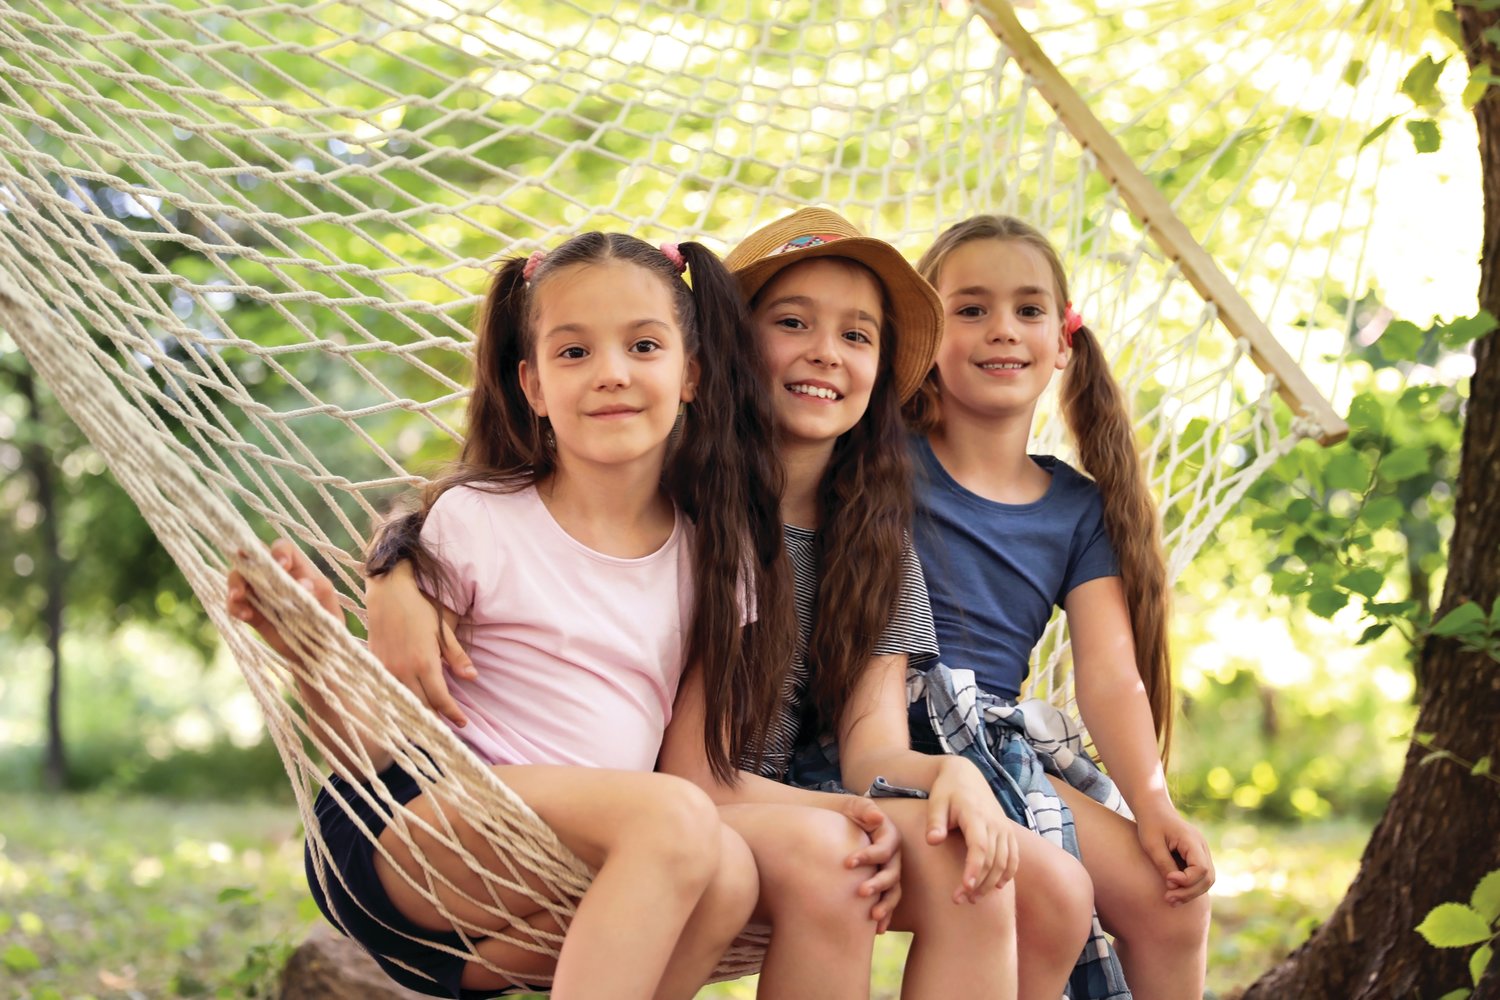 Little girls in hammock outdoors.